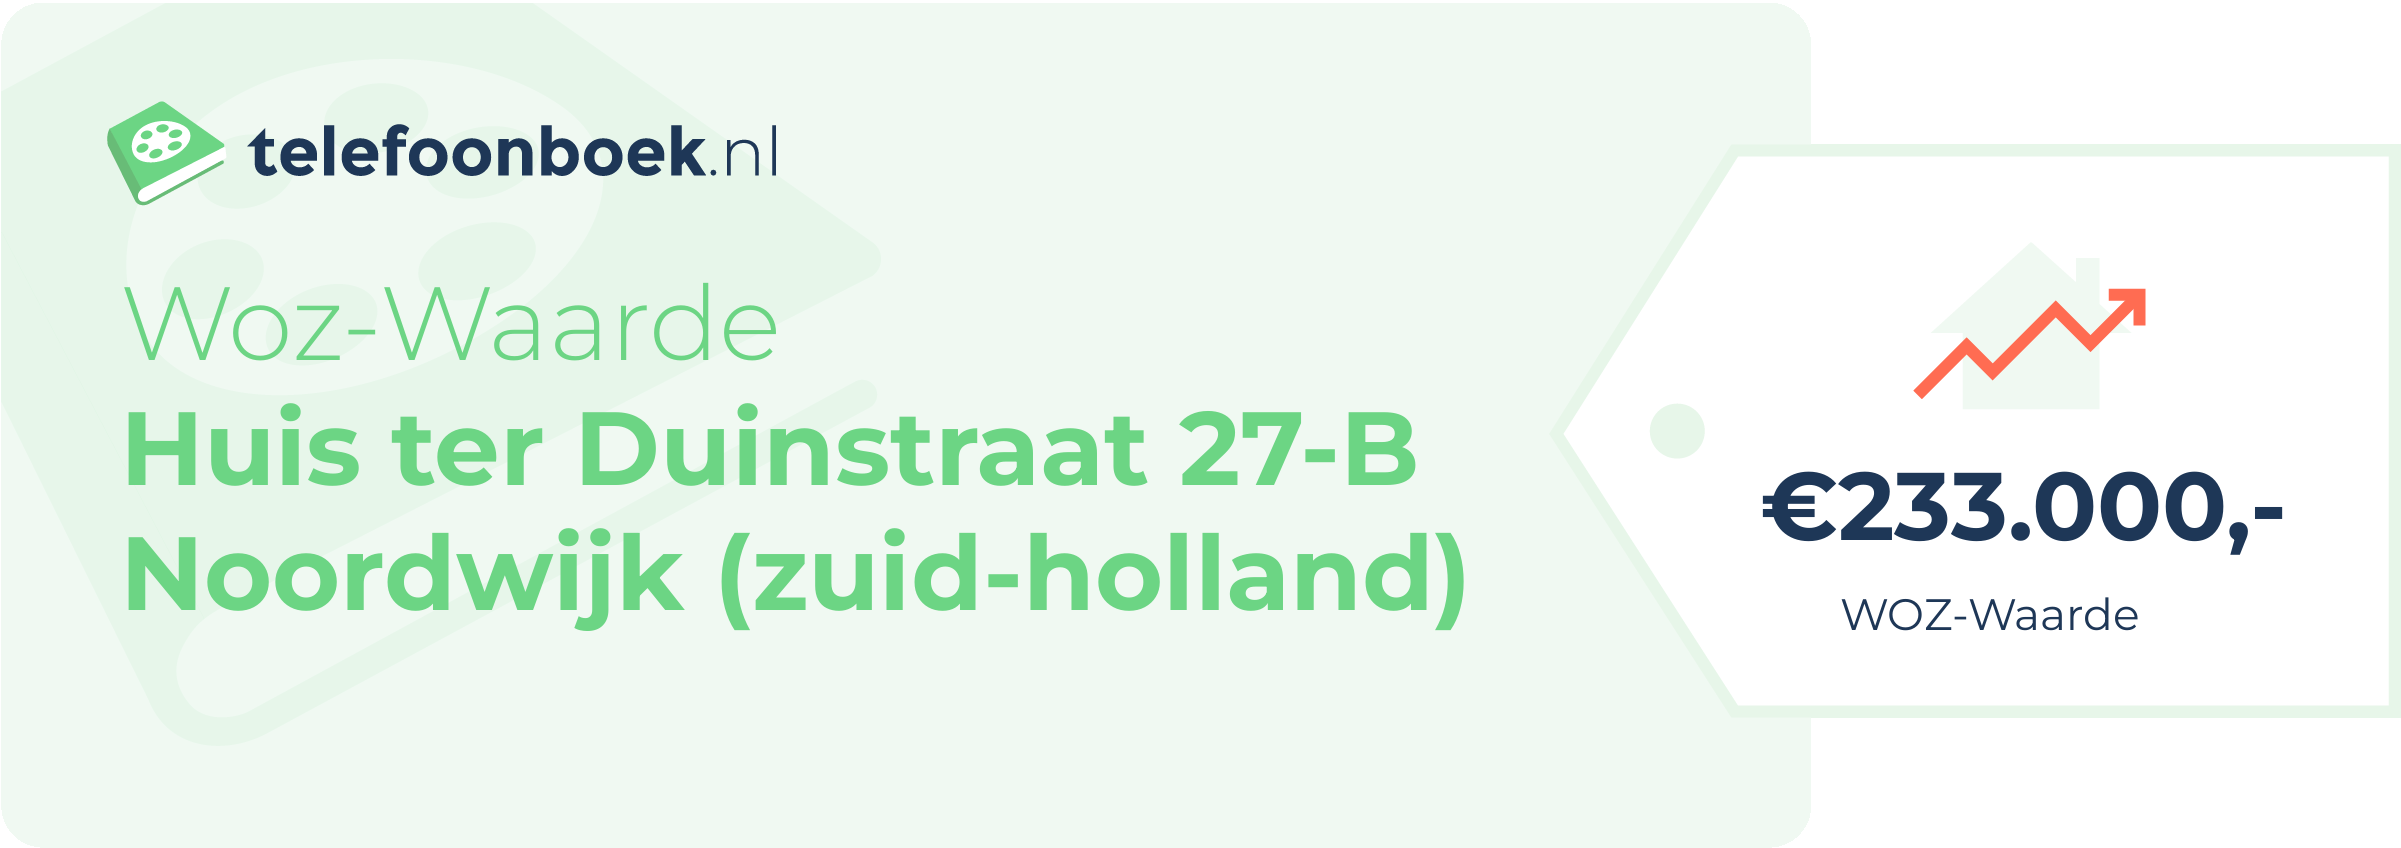 WOZ-waarde Huis Ter Duinstraat 27-B Noordwijk (Zuid-Holland)